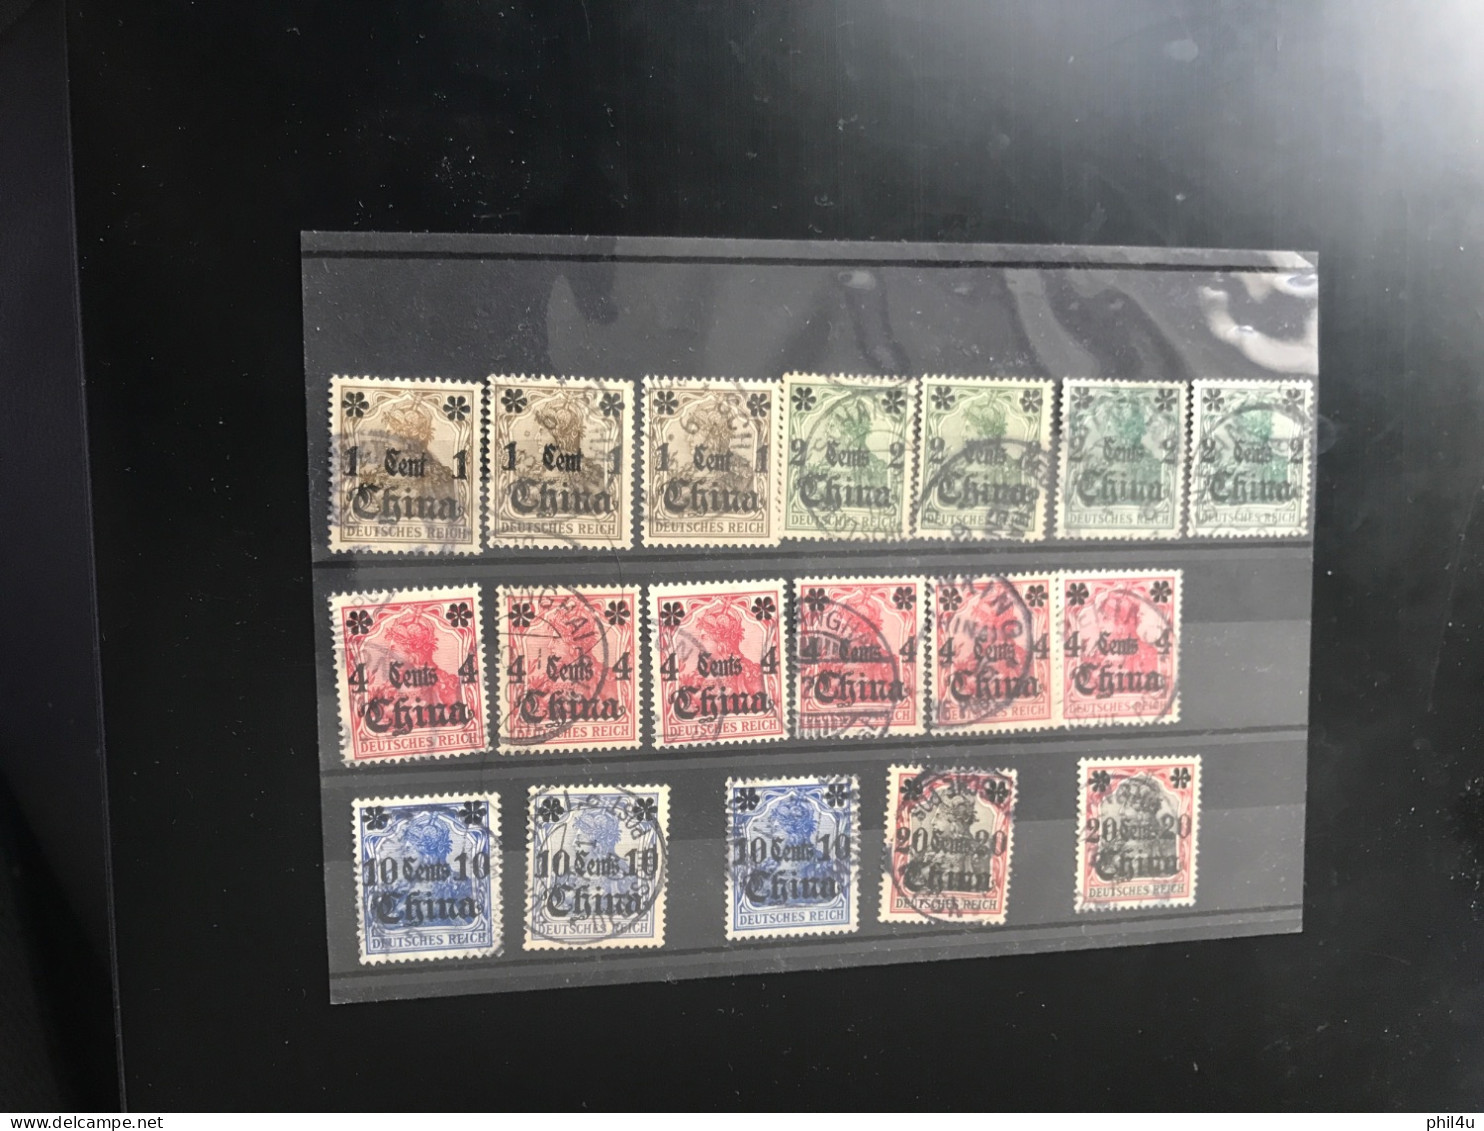 China Overprinted On Deutsch Reich SG1c,2c,4c,10c,20c Cat £66.75 As Per SG2018 £66.75 See Photos - Gebraucht